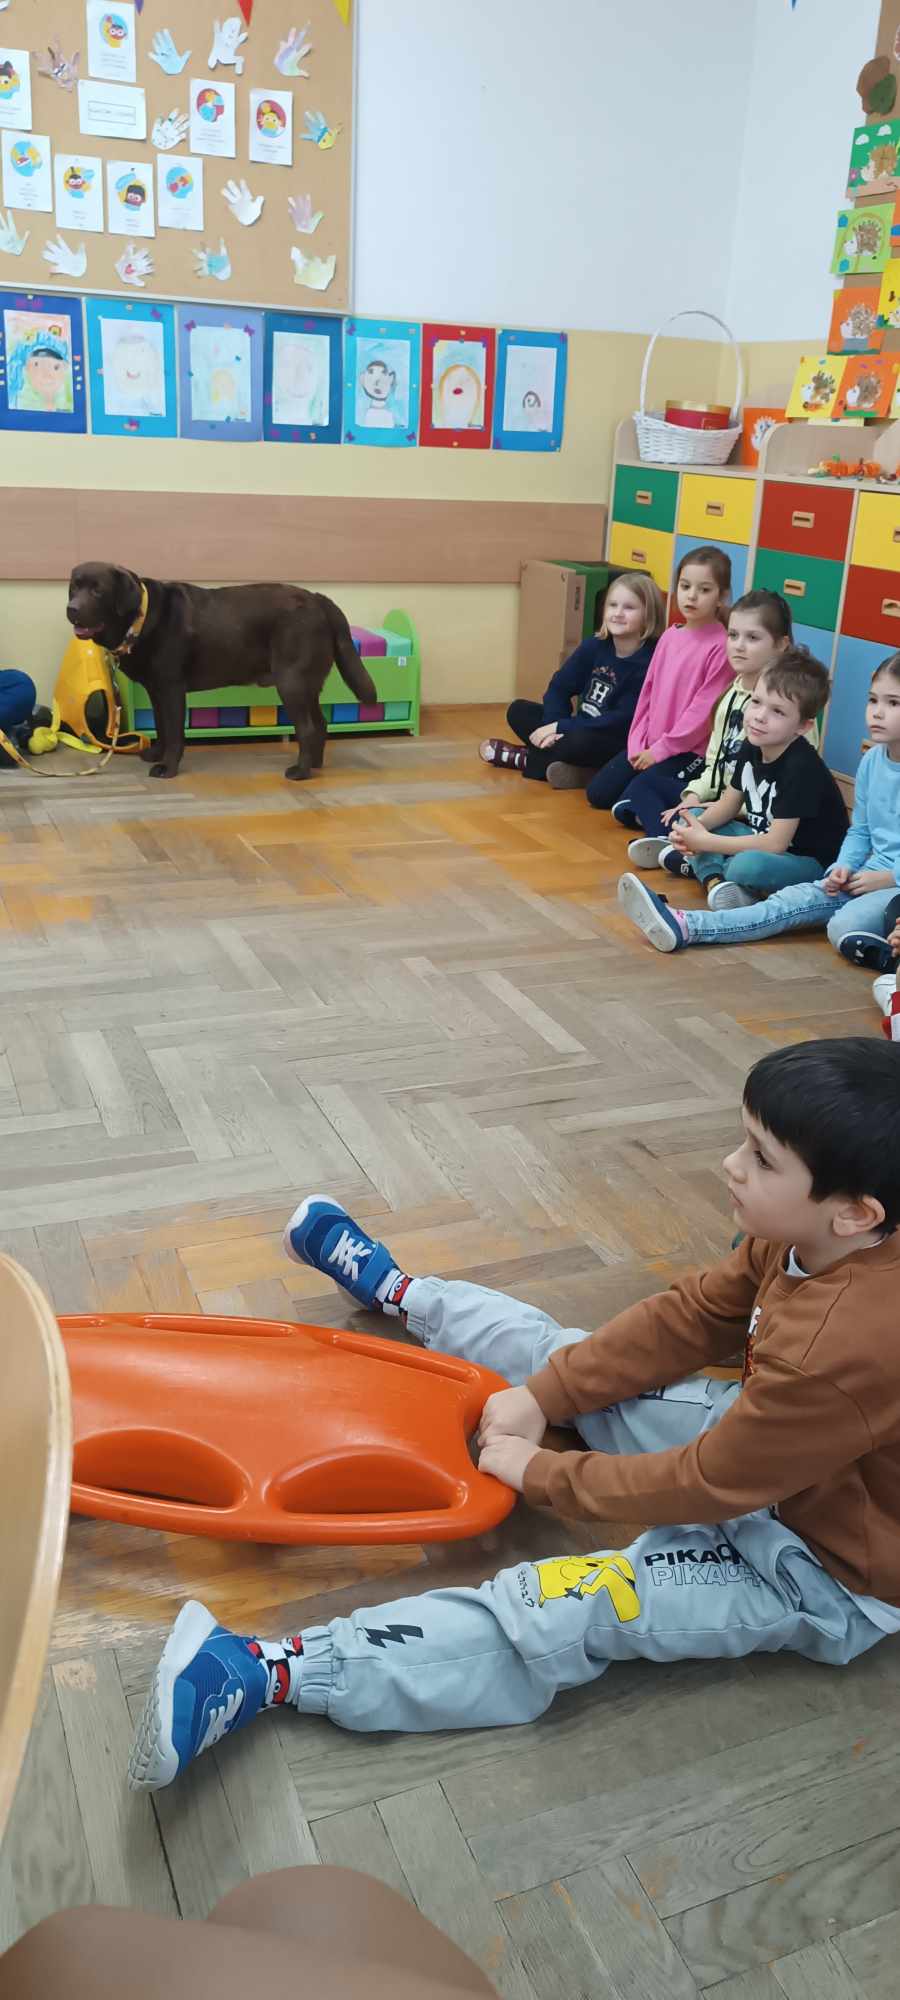 Klasa szkolna, na pierwszym planie siedzący chłopiec na podłodze trzyma pomarańczową deskę ratunkową. Po prawej stronie grupa dzieci obserwująca chłopca. Na wprost stoi duży brązowy pies.